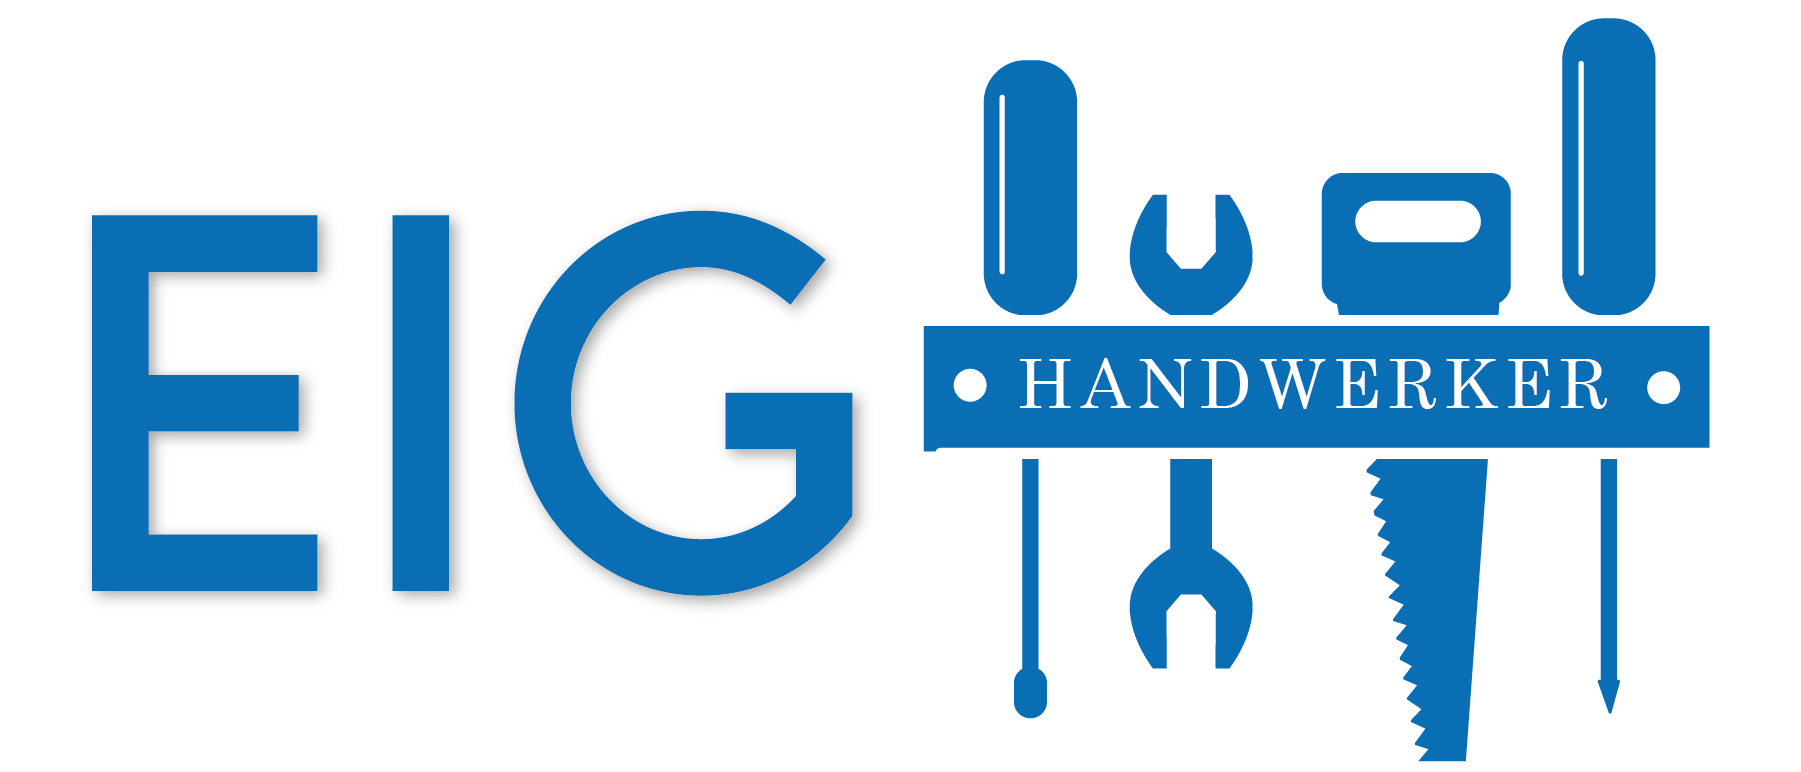 EIG - Handwerker und Hausmeisterservice Regensburg - Logo